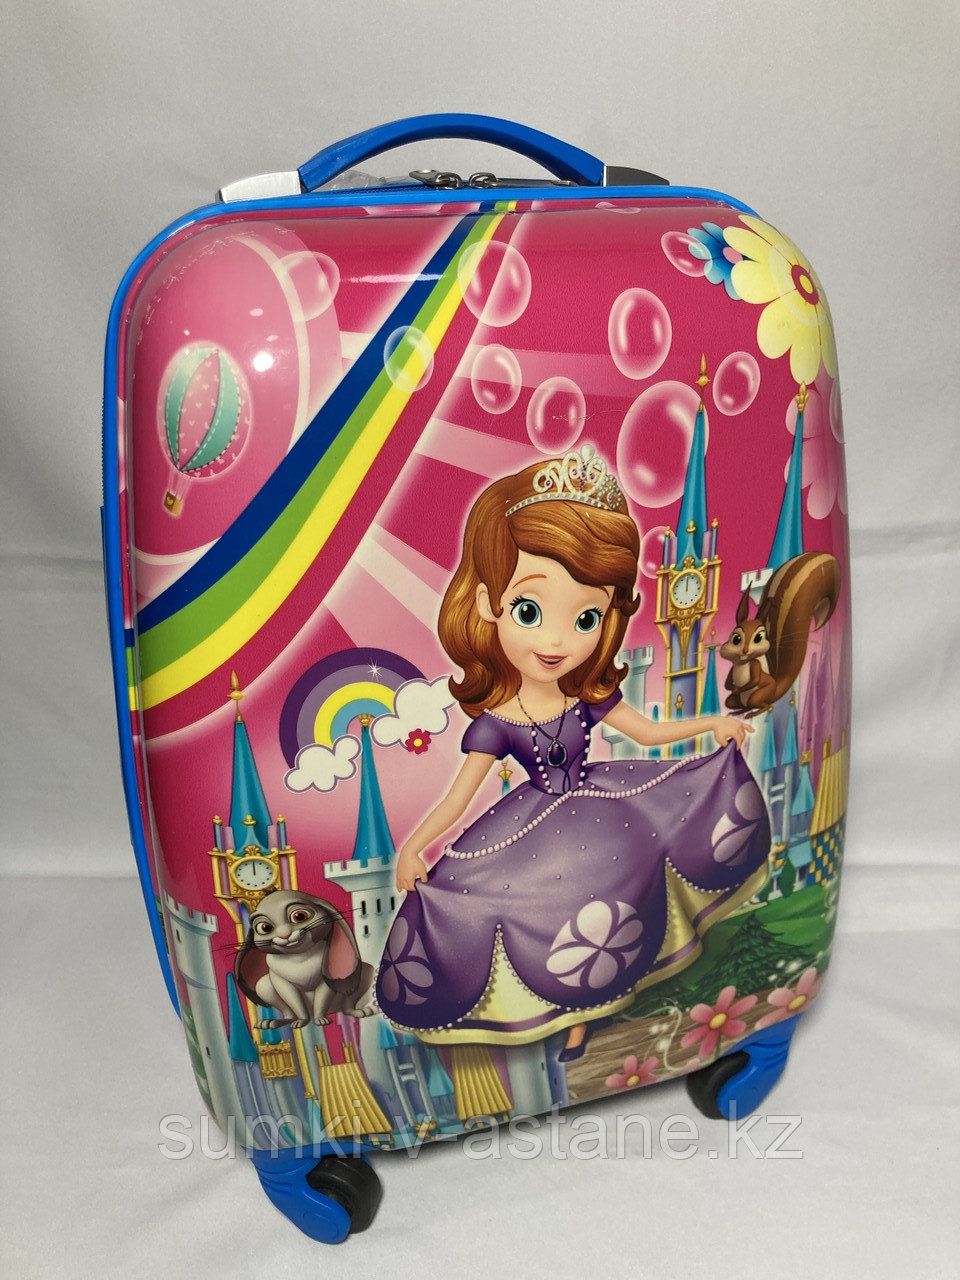 Детский пластиковый чемодан на 4-х колёсах для девочек , 5-9 лет (высота 46 см, ширина 31 см, глубина 21 см)